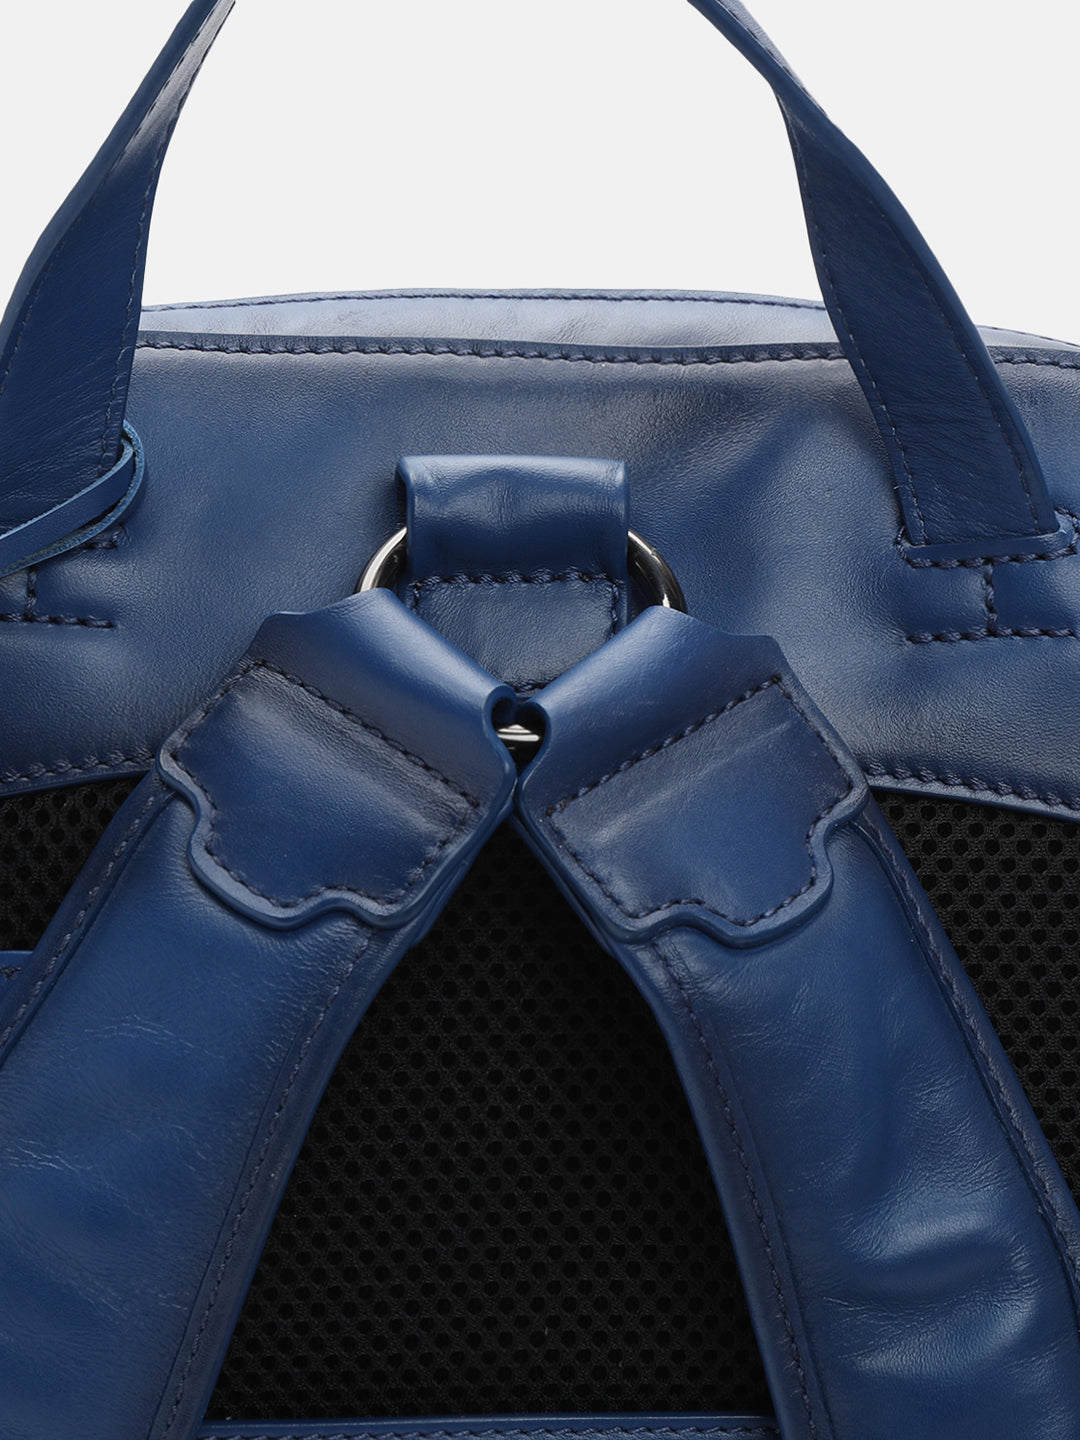 BAGATT Solofra Light blue Leather Bagpack